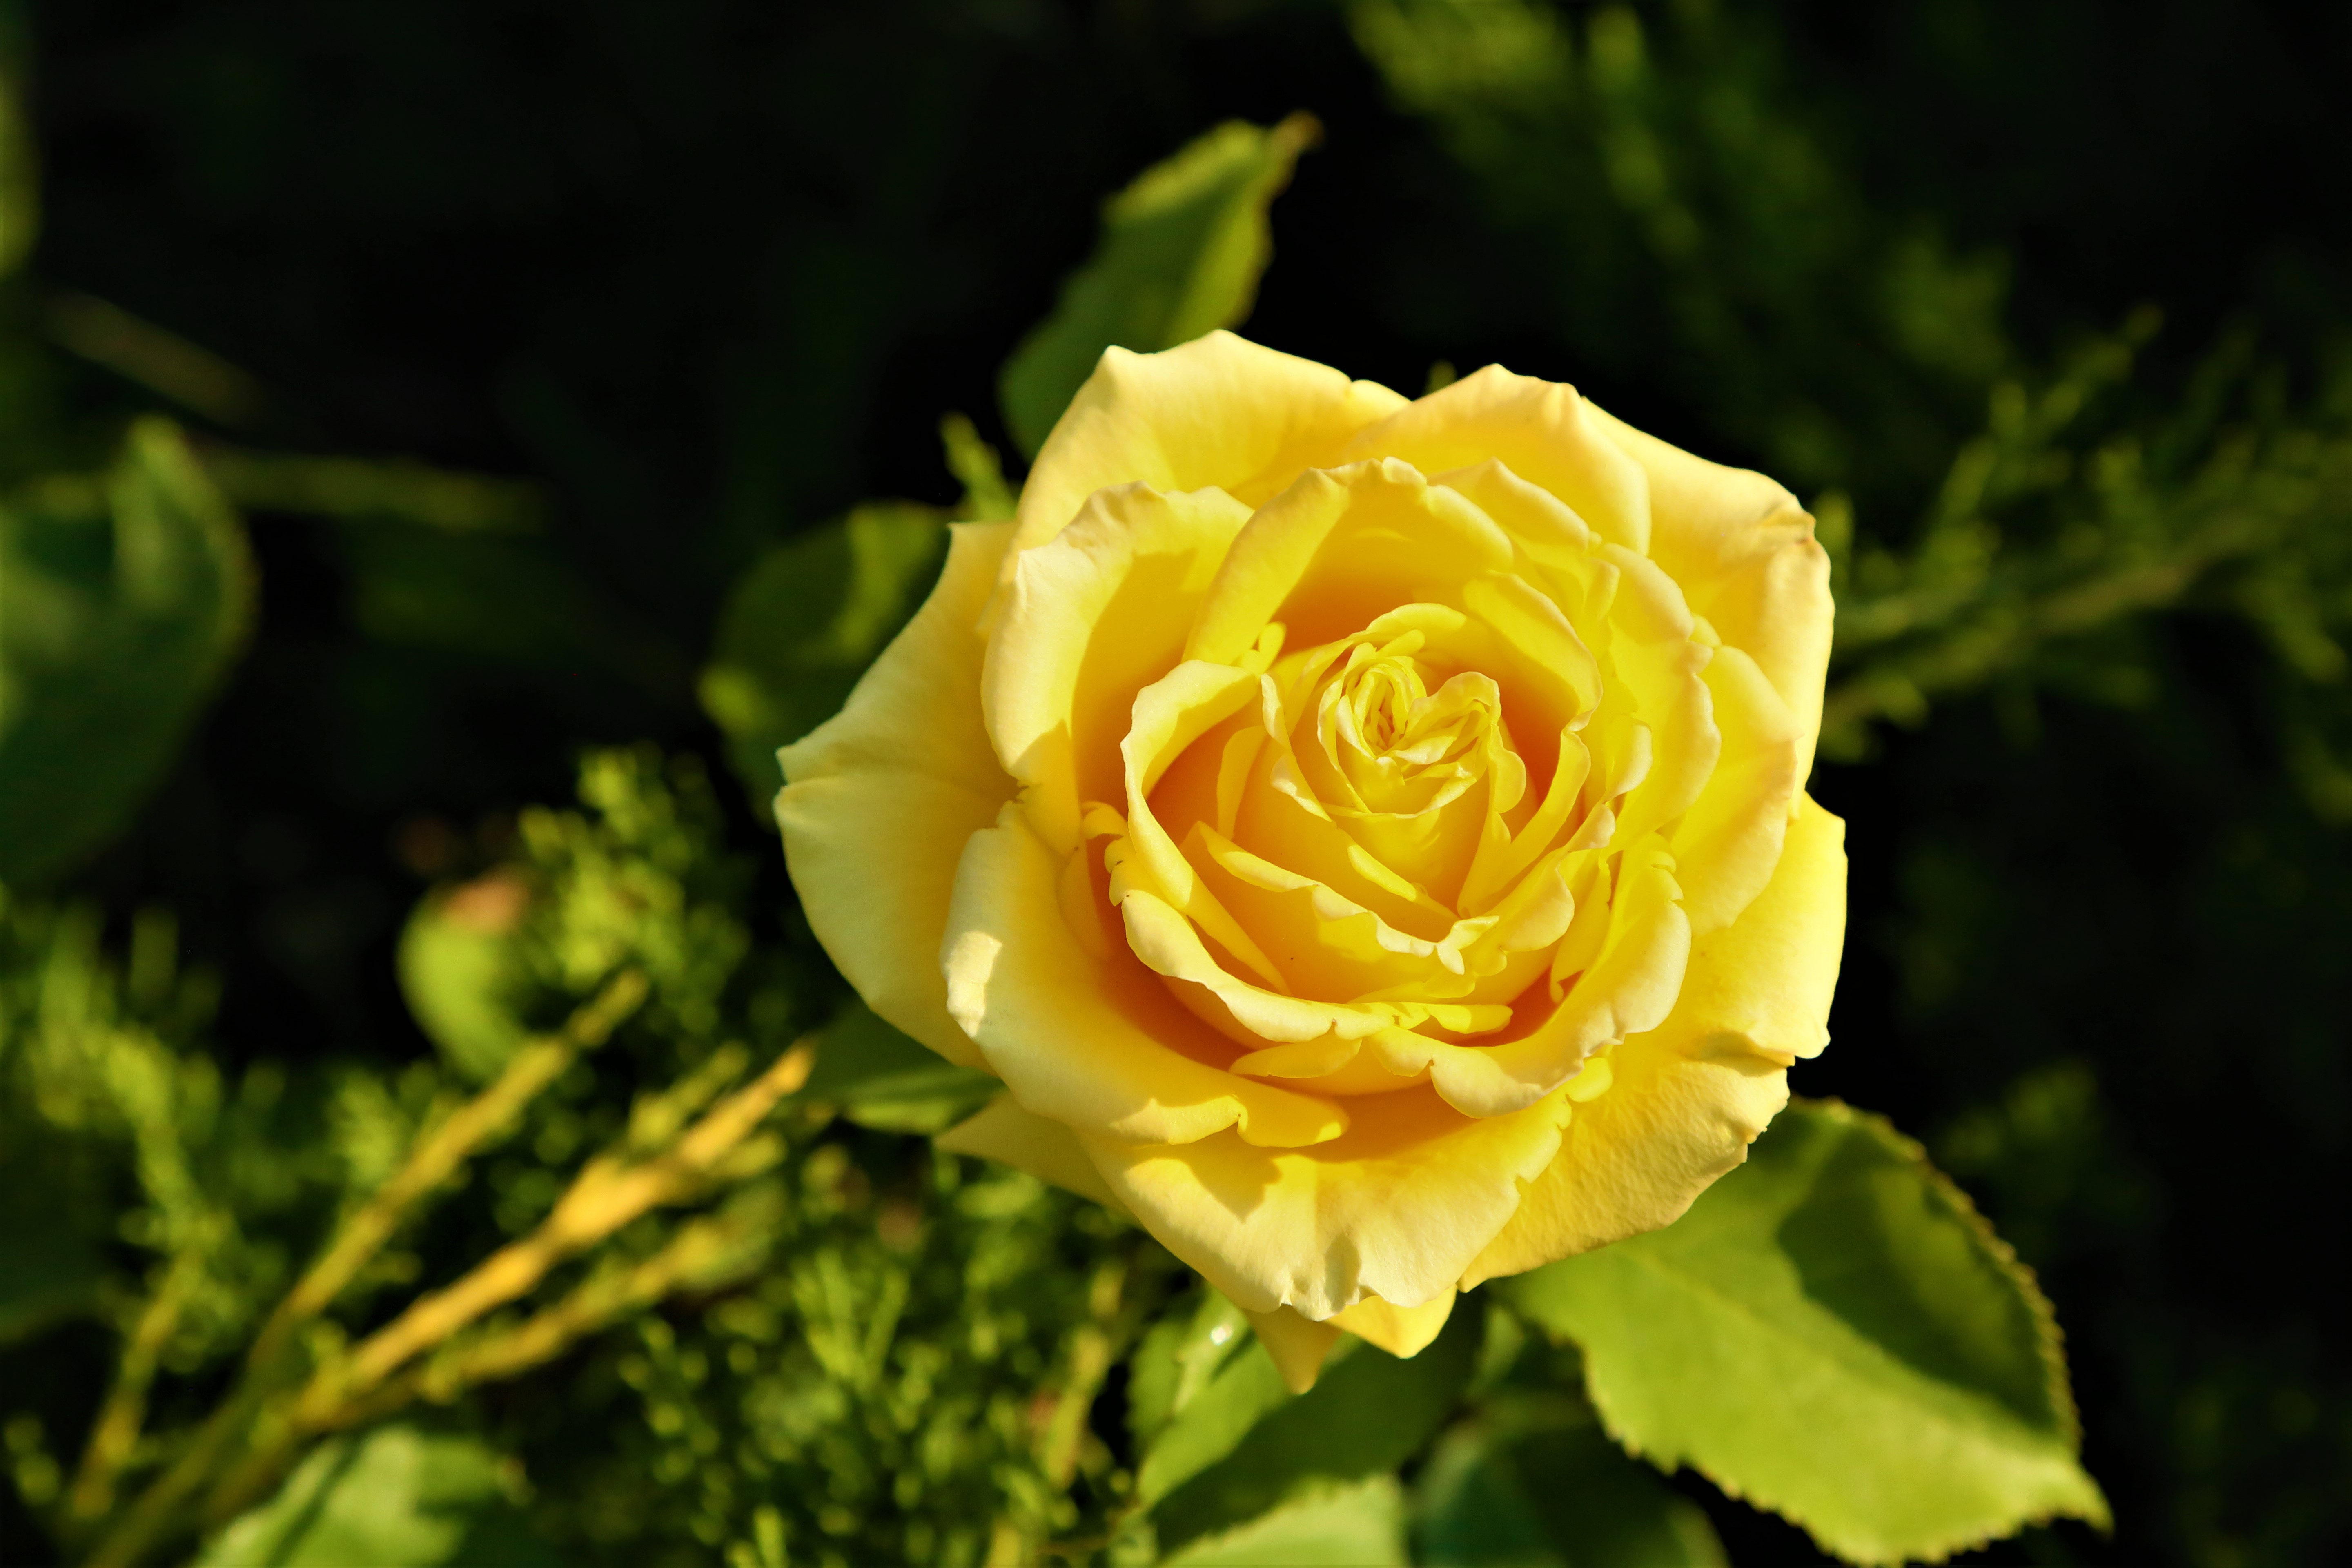 Скачать обои бесплатно Цветок, Роза, Желтый Цветок, Земля/природа, Желтая Роза, Флауэрсы картинка на рабочий стол ПК